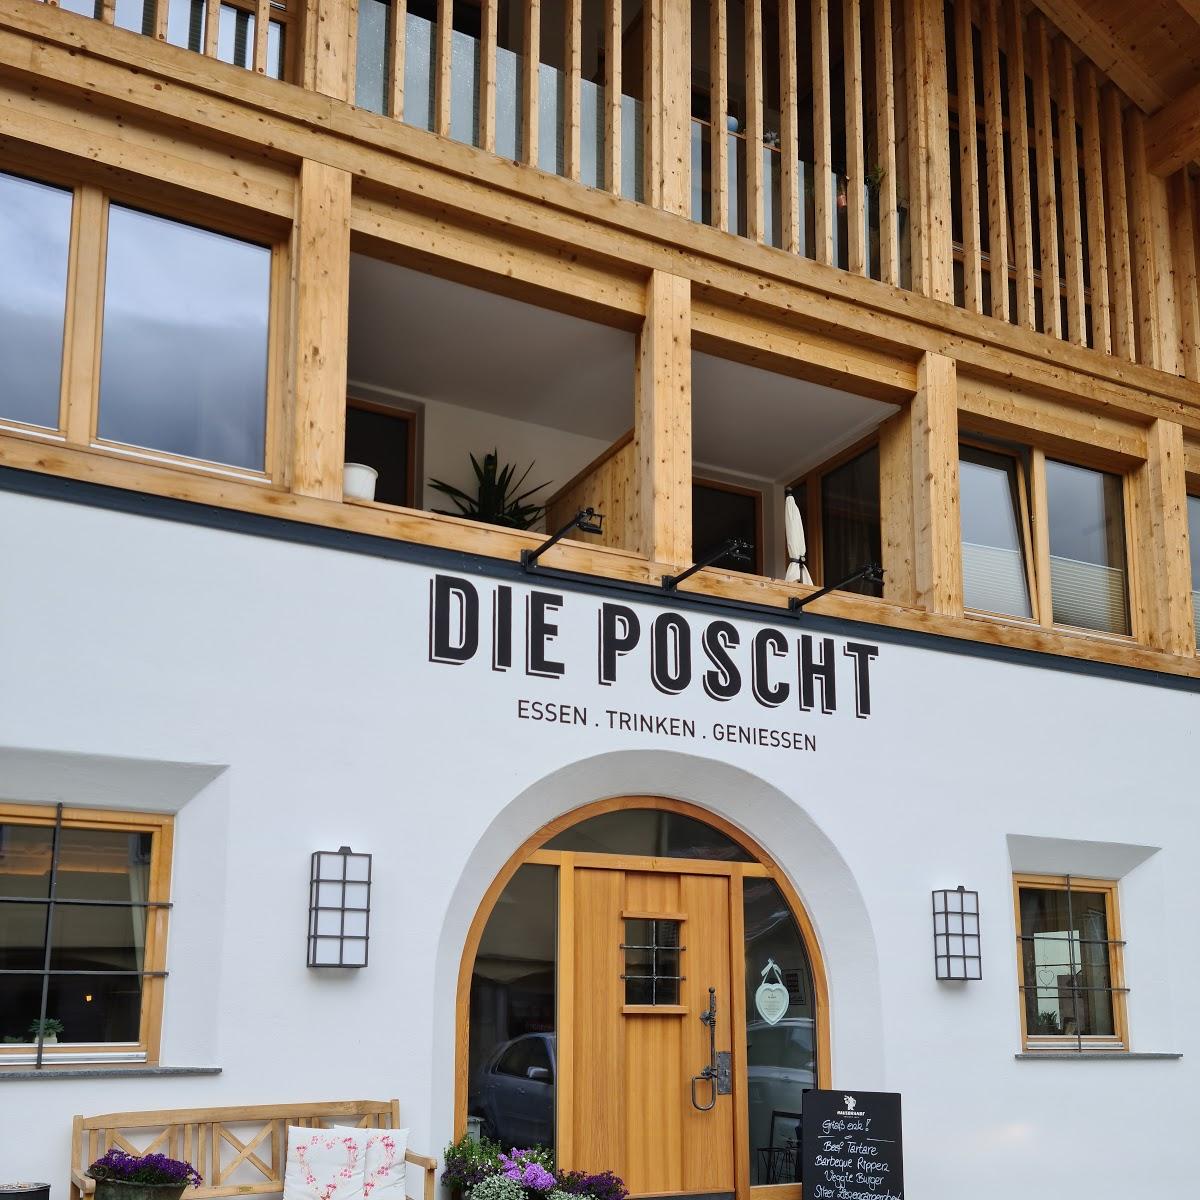 Restaurant "Die Poscht" in Silz